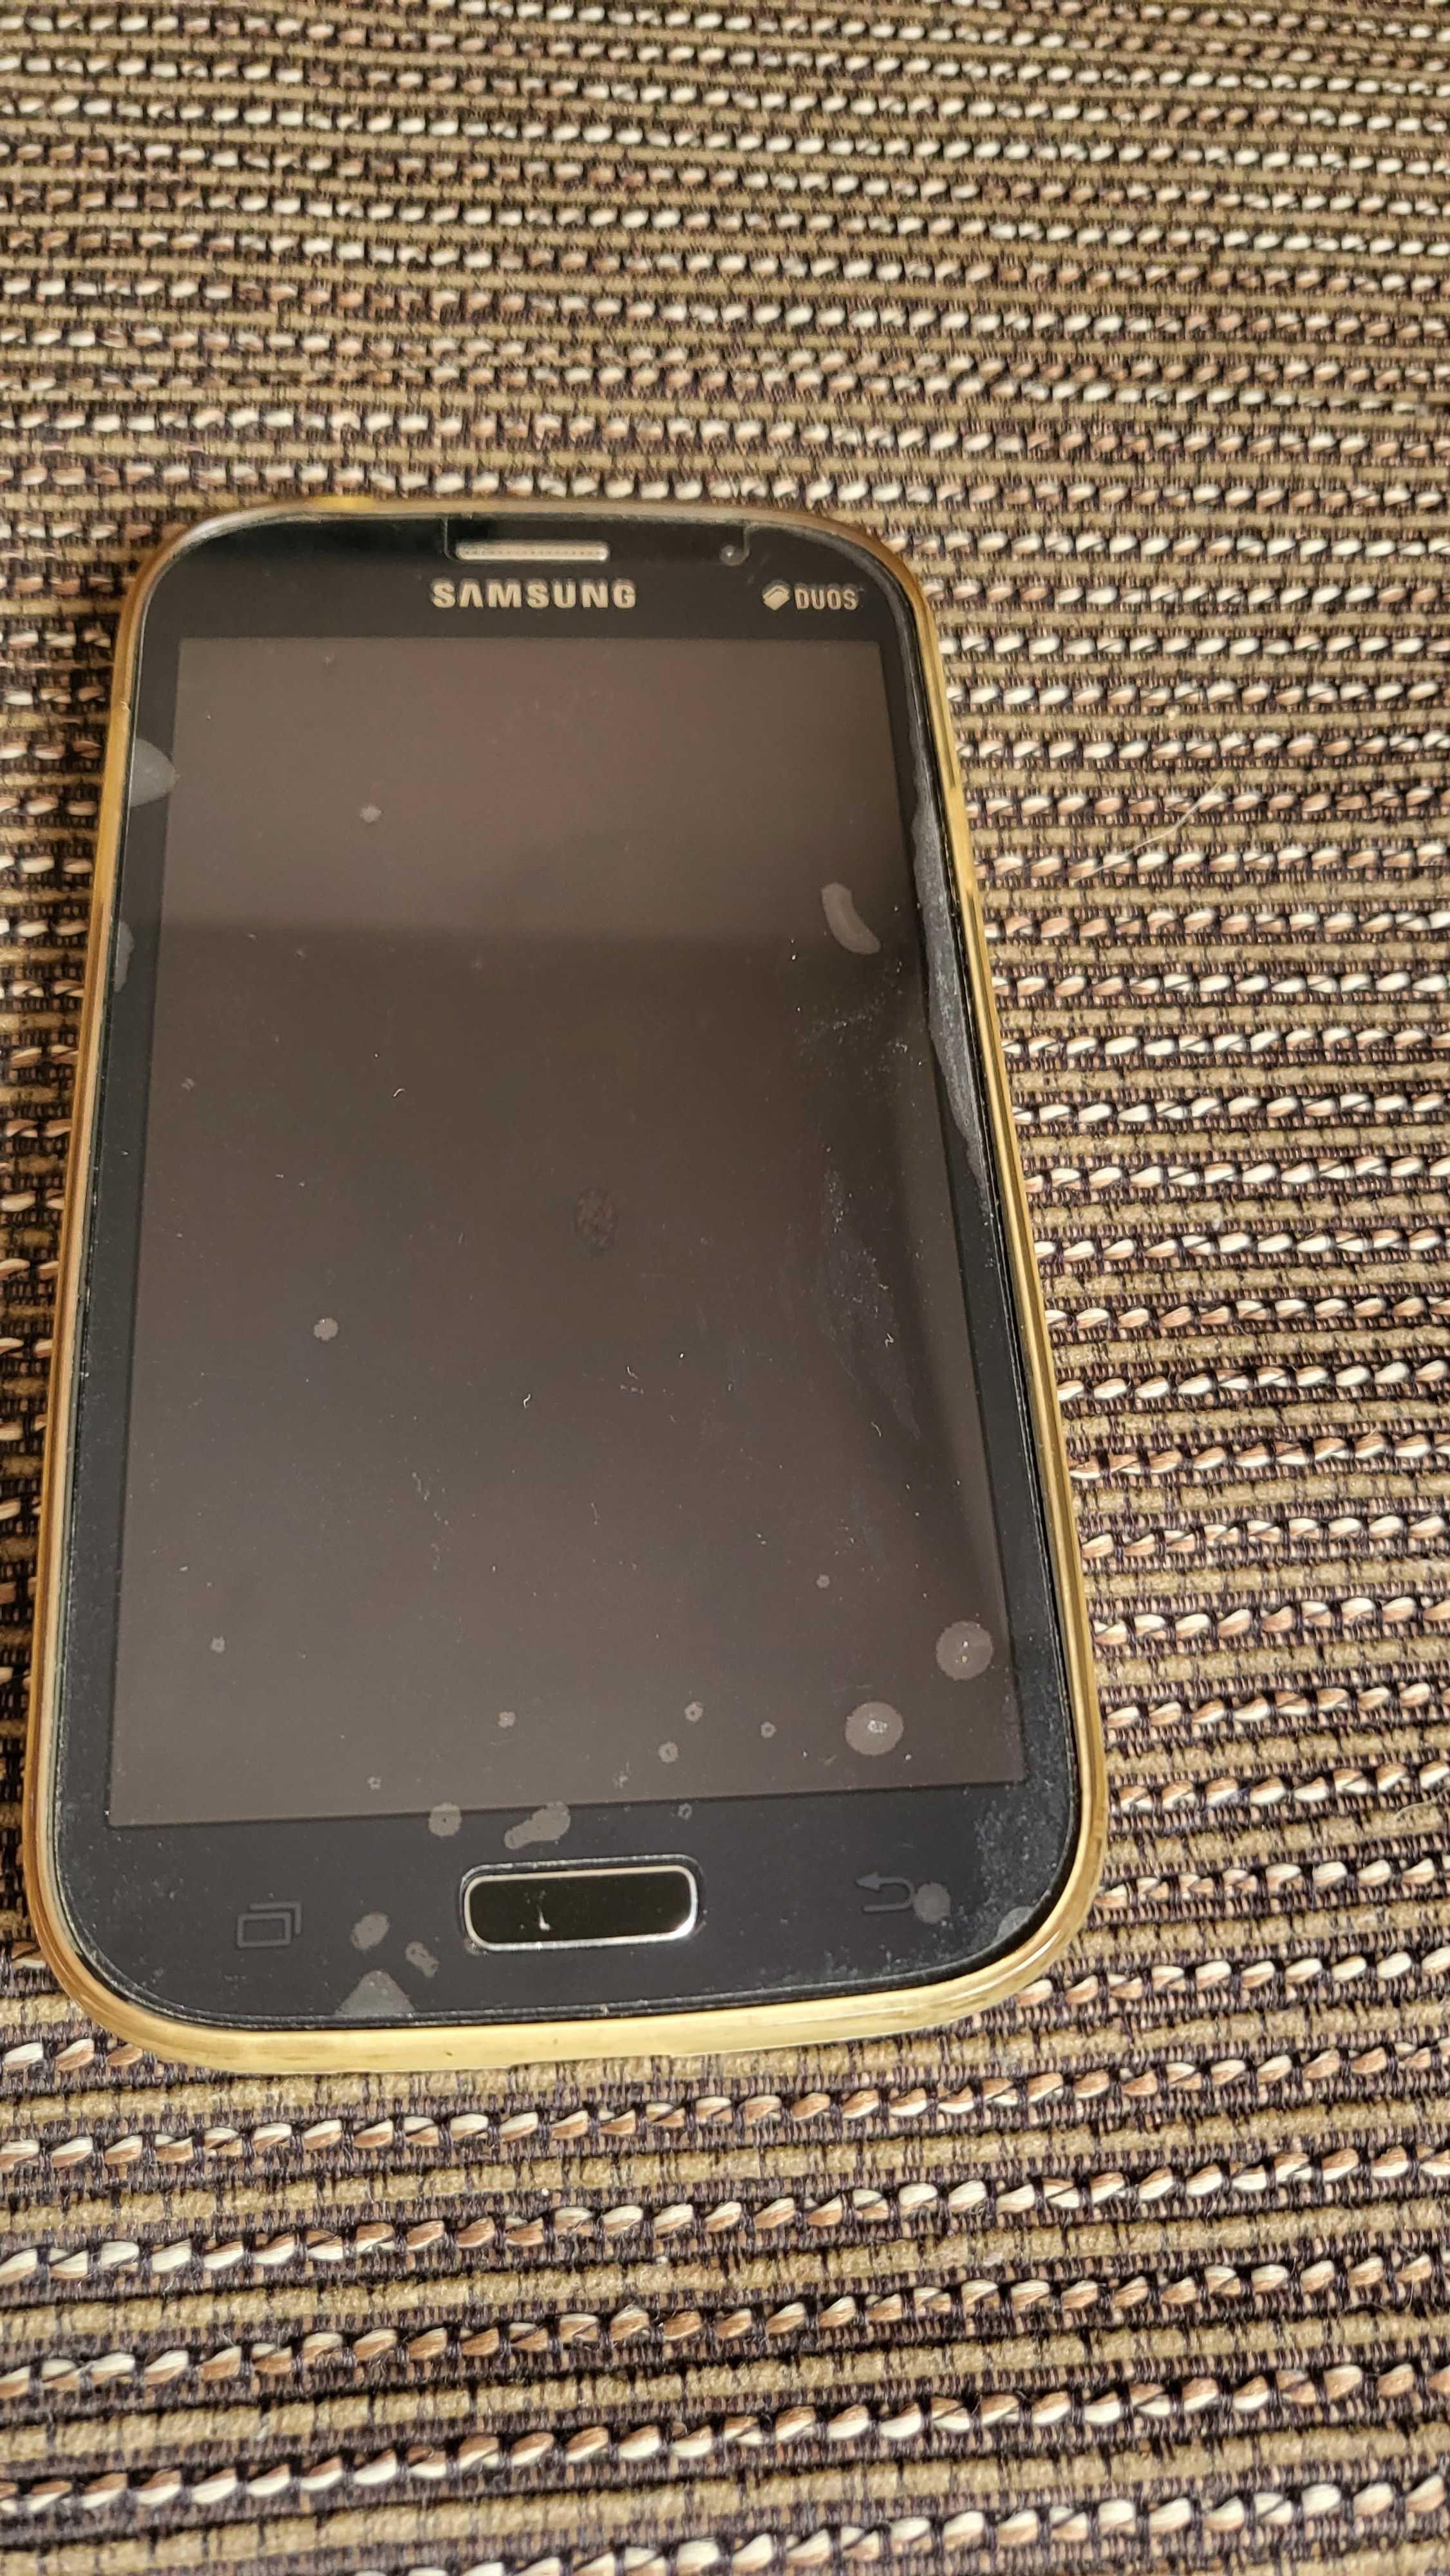 Samsung Galaxy Grand Neo Plus (GT-I9060I) 8GB, черен цвят